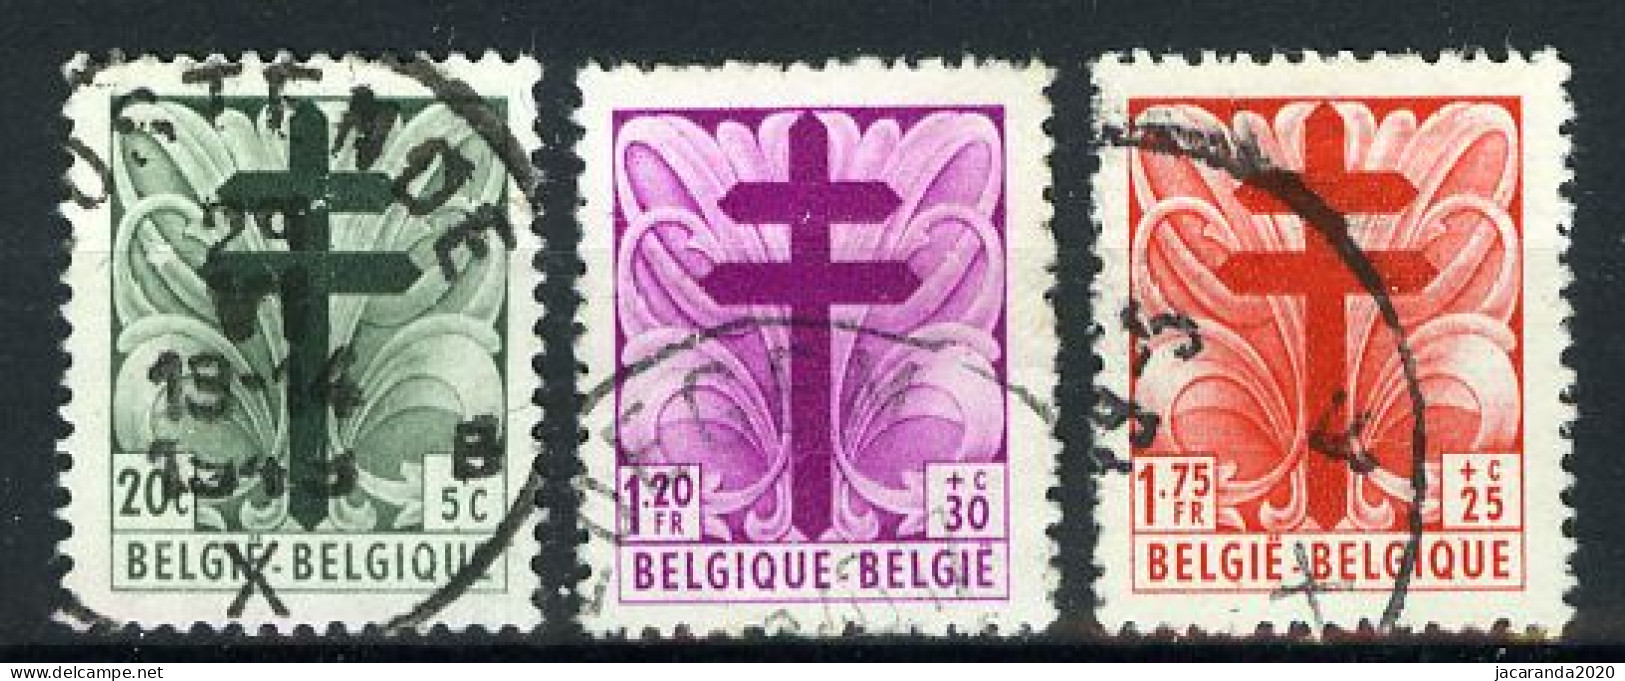 België 787/89 - Antitering - Kruis Van Lotharingen - Portretten Van De Senaat III - Gestempeld - Oblitéré - Used - Usati